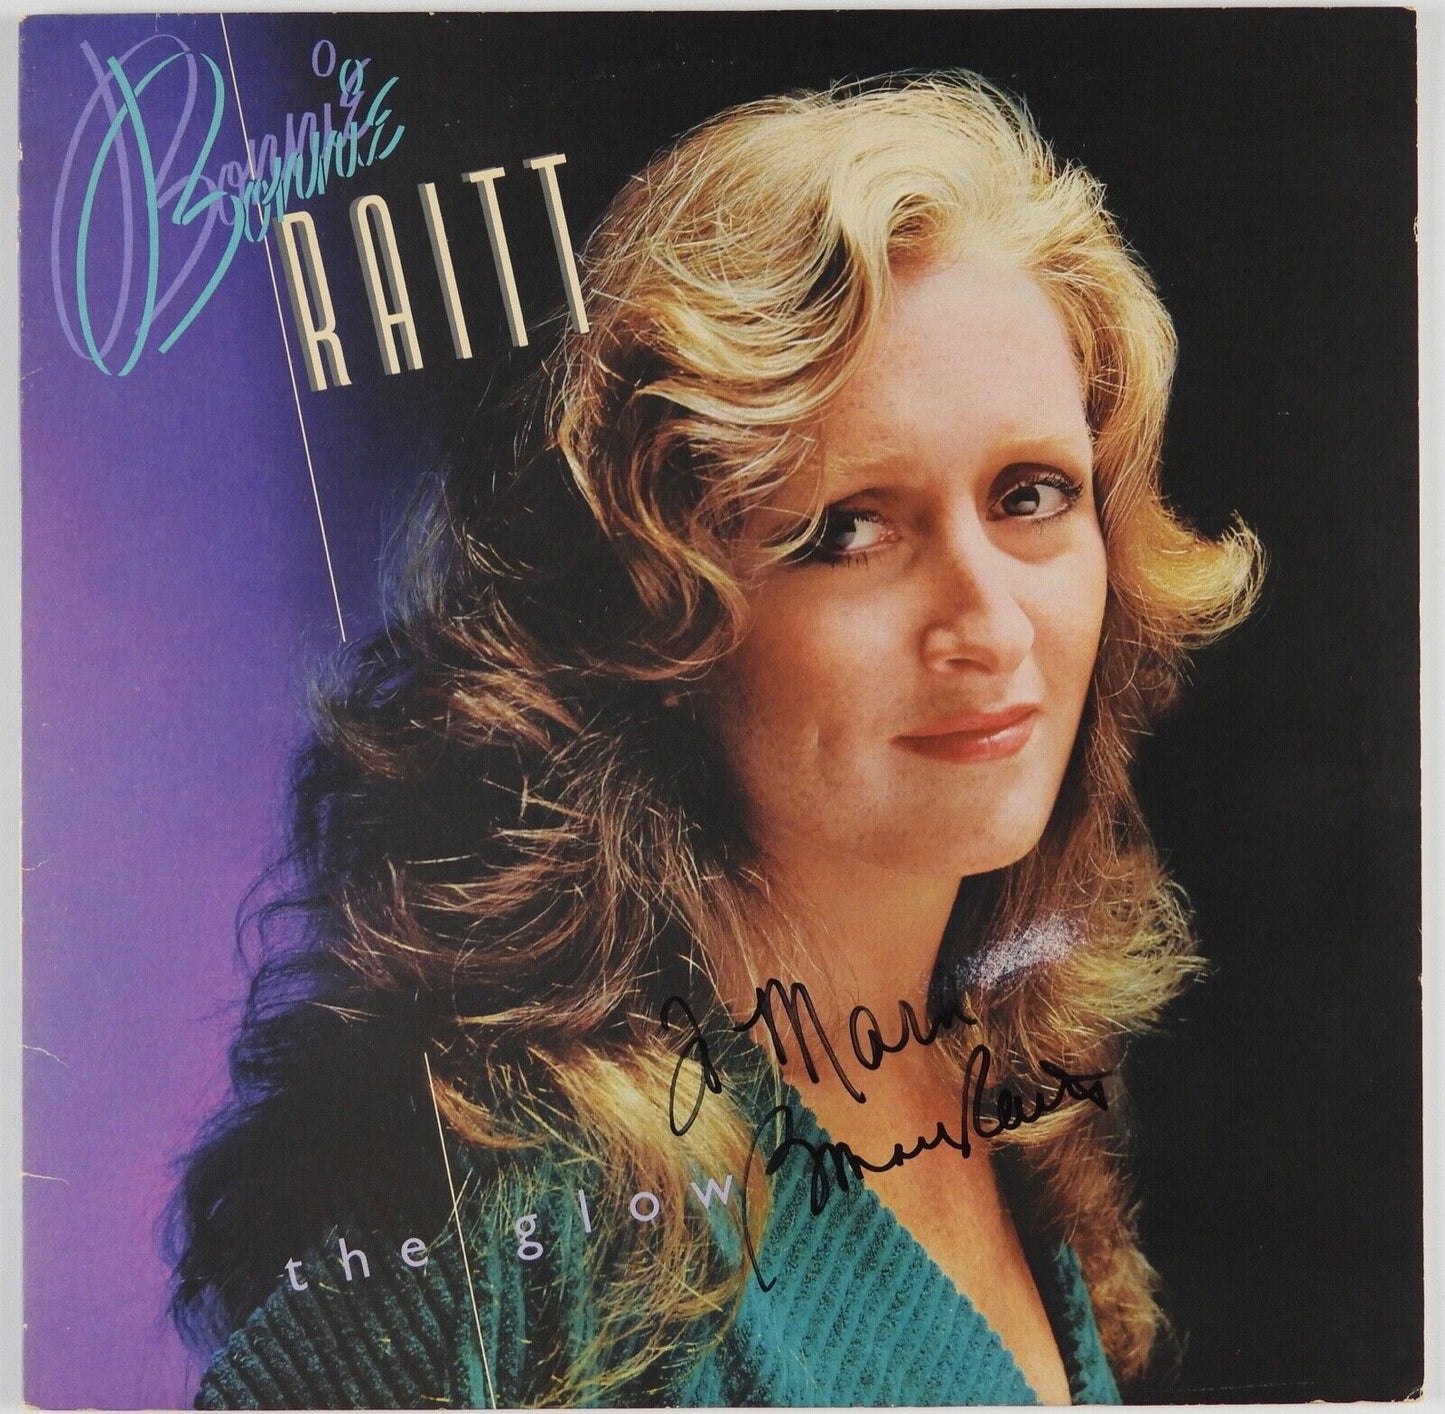 Bonnie Raitt JSA Signed Autograph Album LP Record Vinyl The Glow